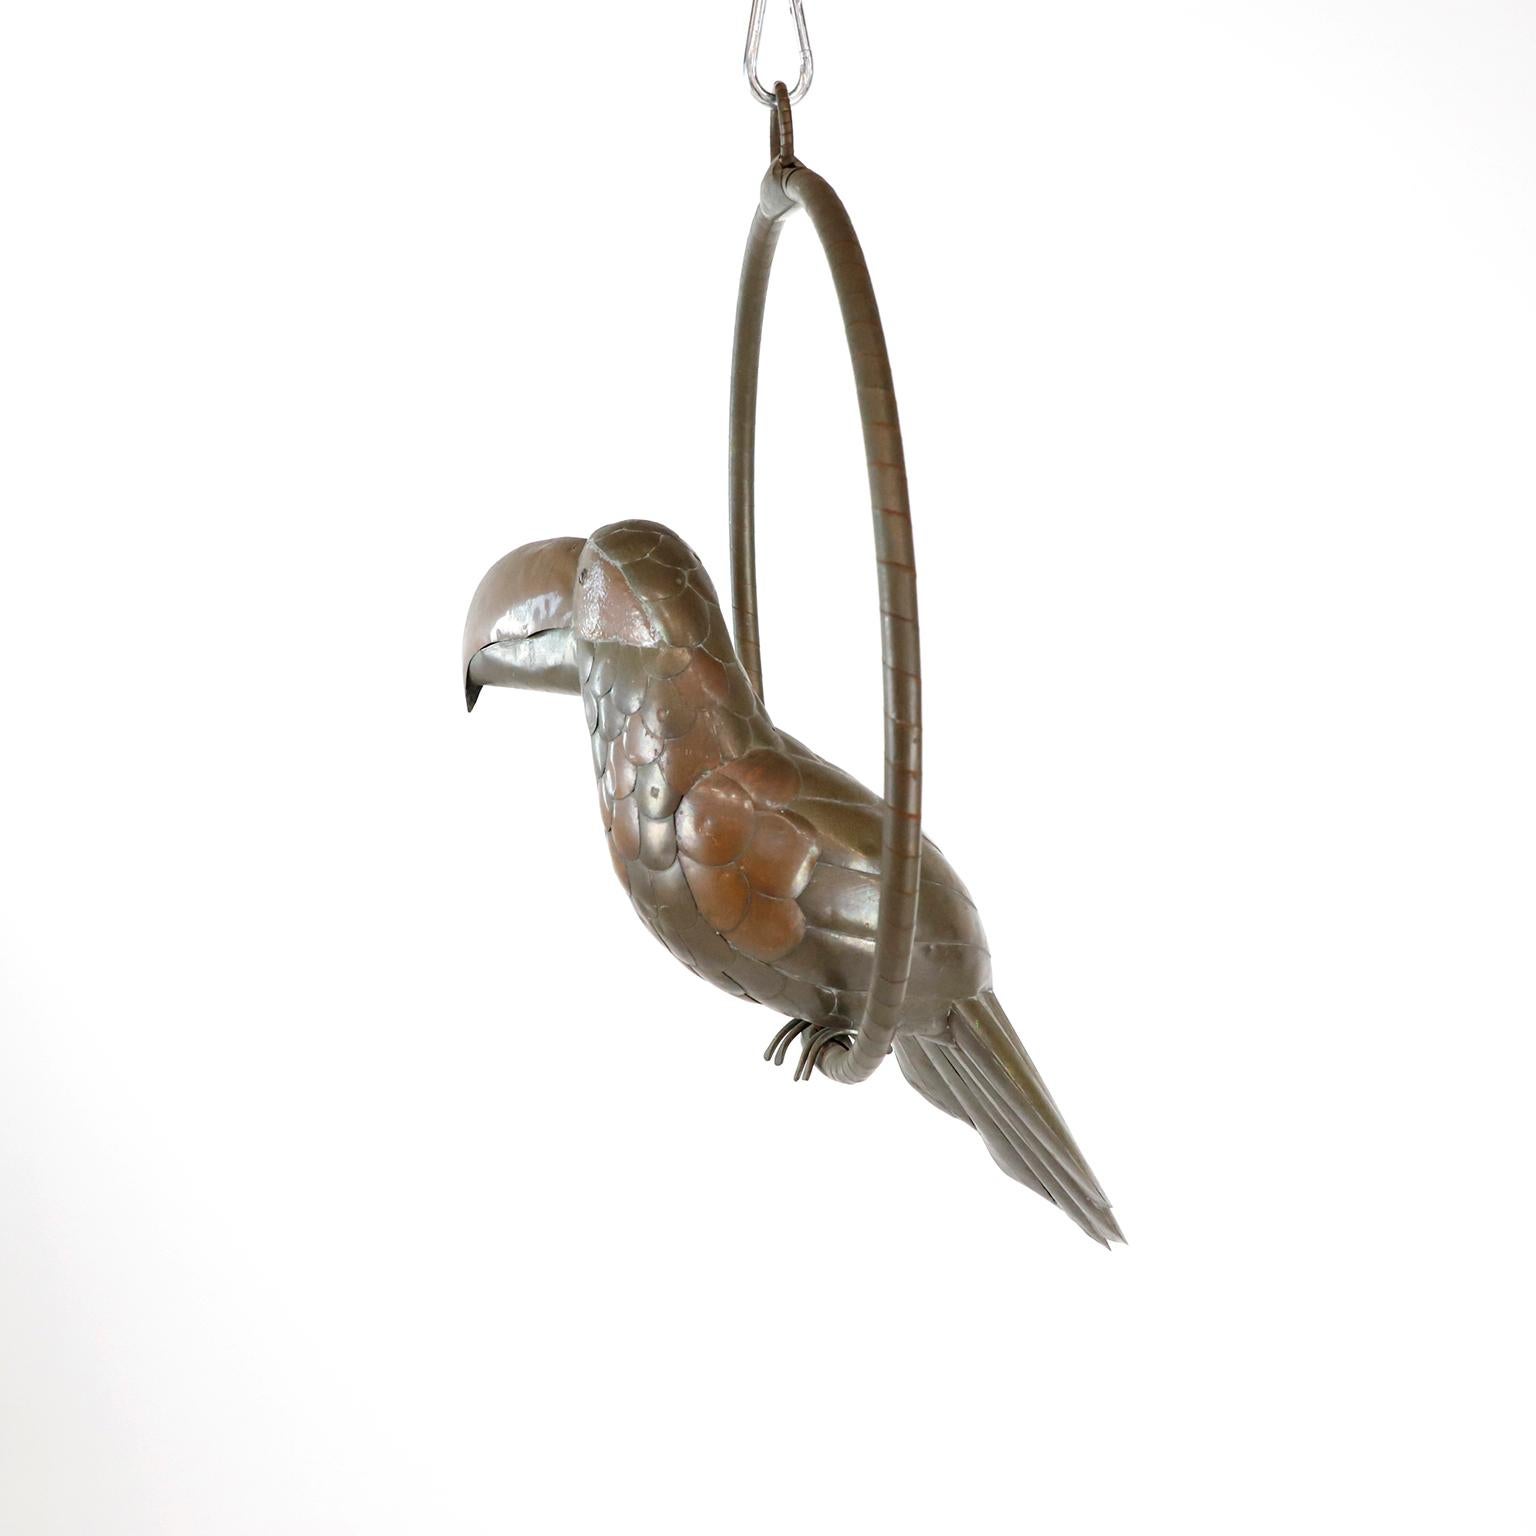 Nous proposons cette sculpture de toucan de l'artiste mexicain Sergio Bustamante, vers 1960, réalisée en laiton et cuivre avec une fantastique patine. Présentez quelques détails.